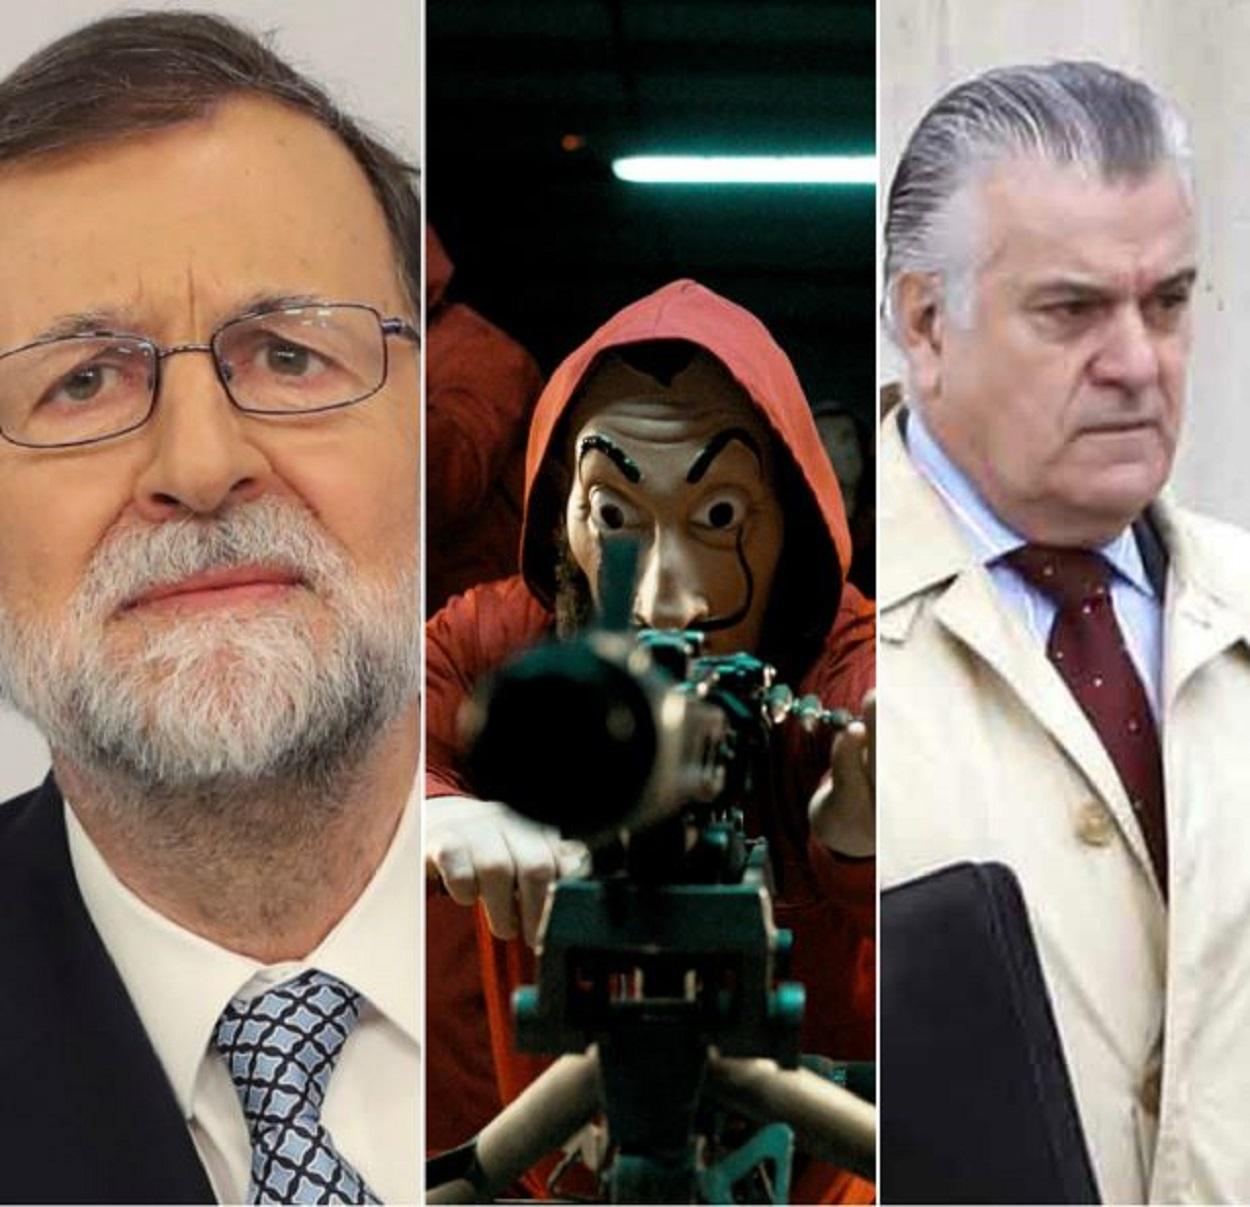 La Casa de Papel ha hecho referencia en su cuarta temporada al SMS que Rajoy le mandó a Bárcenas con el mensaje "Sé fuerte"